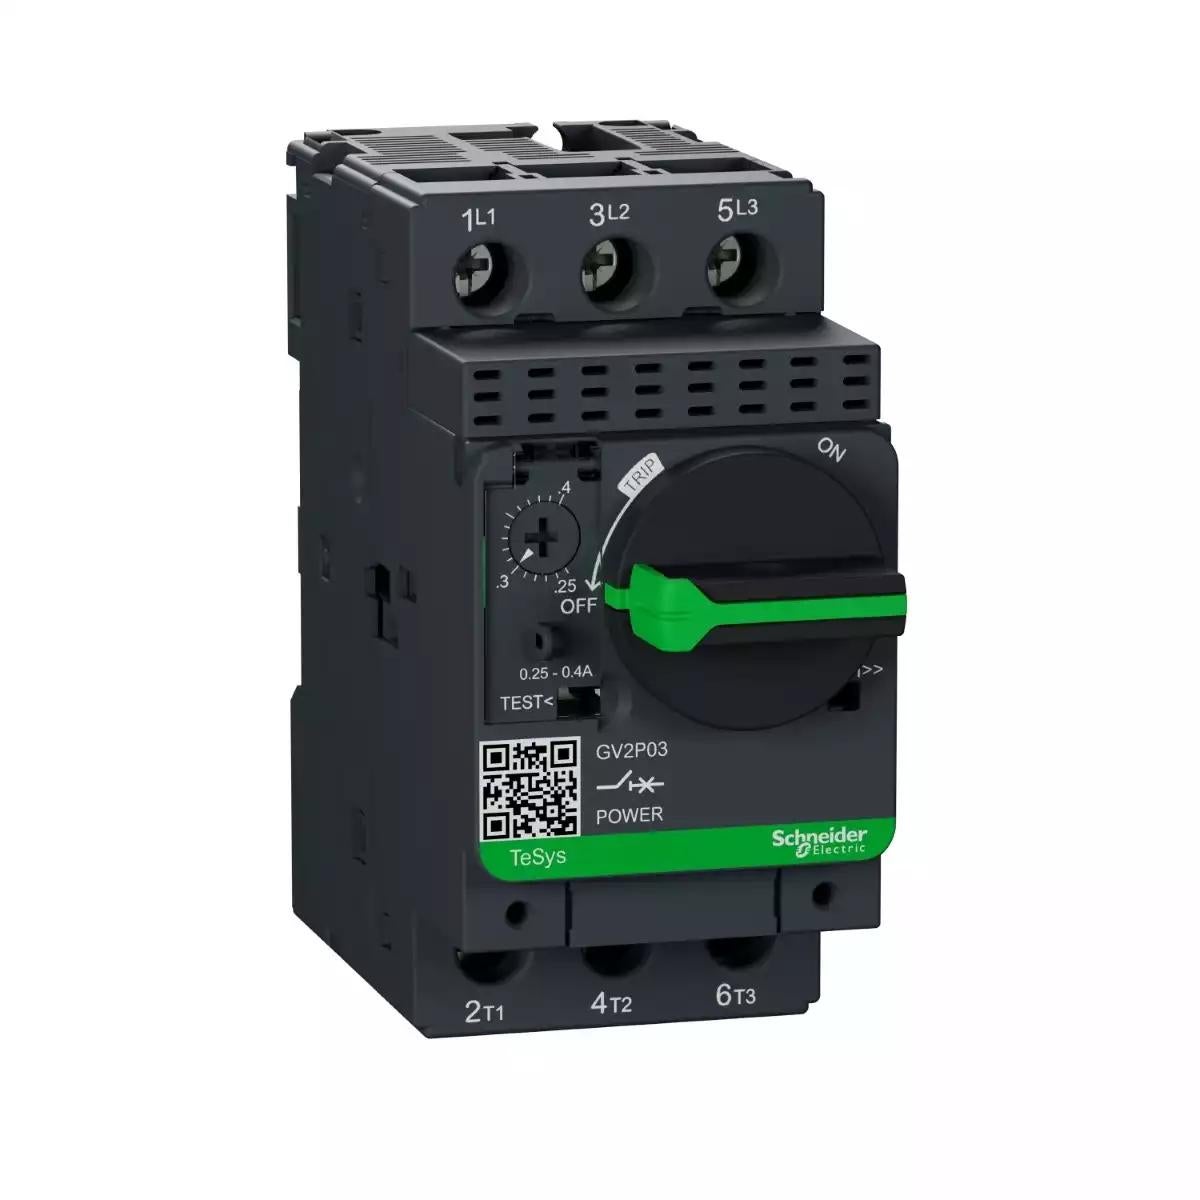 Motor circuit breaker, TeSys GV2, 3P, 0.25-0.4 A, thermal magnetic, screw clamp terminals